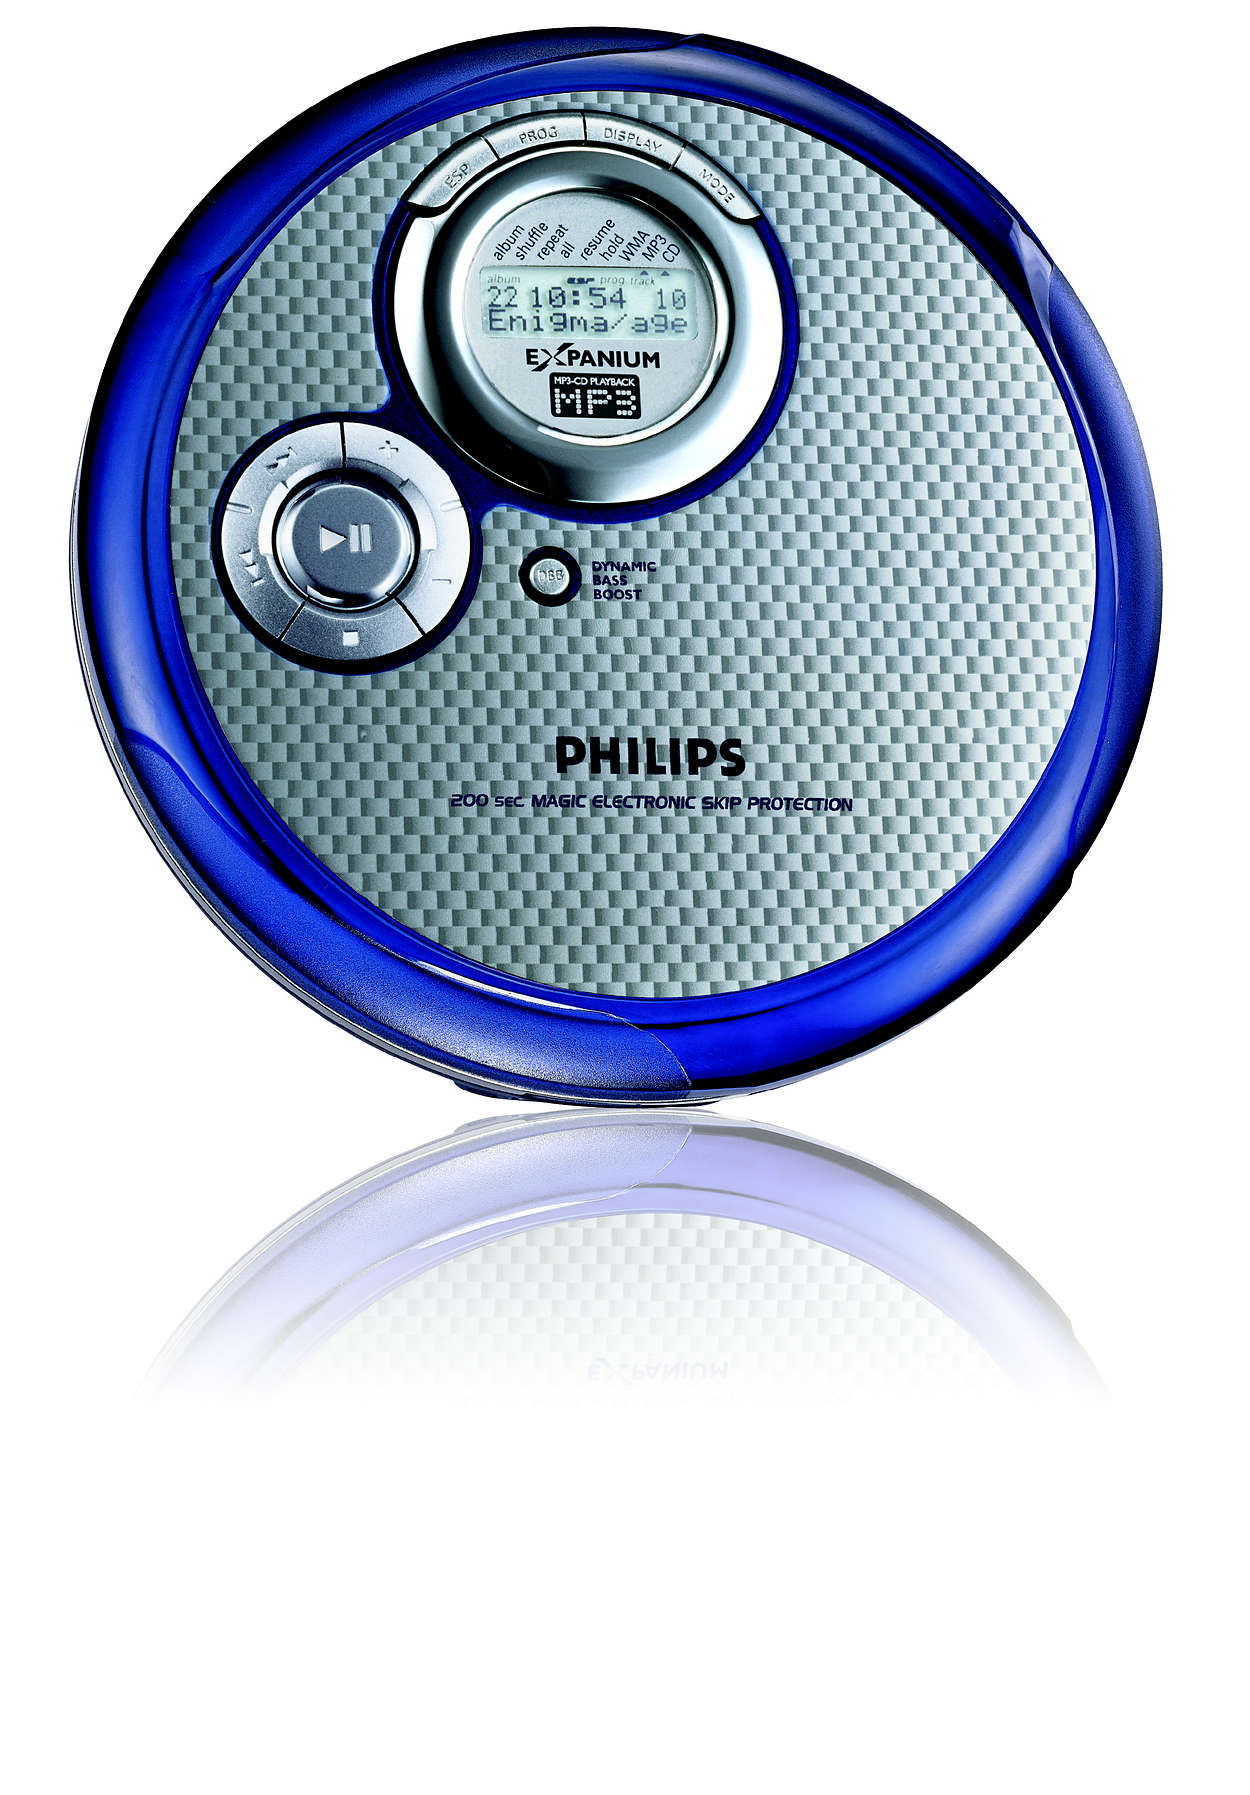 Personal Compatible con CD-R CD Player Mini Compacto Incluye Auriculares KLIM Fusion Reproductor CD portatil con batería Interna CD-RW y MP3 2020 KLIM Discman 